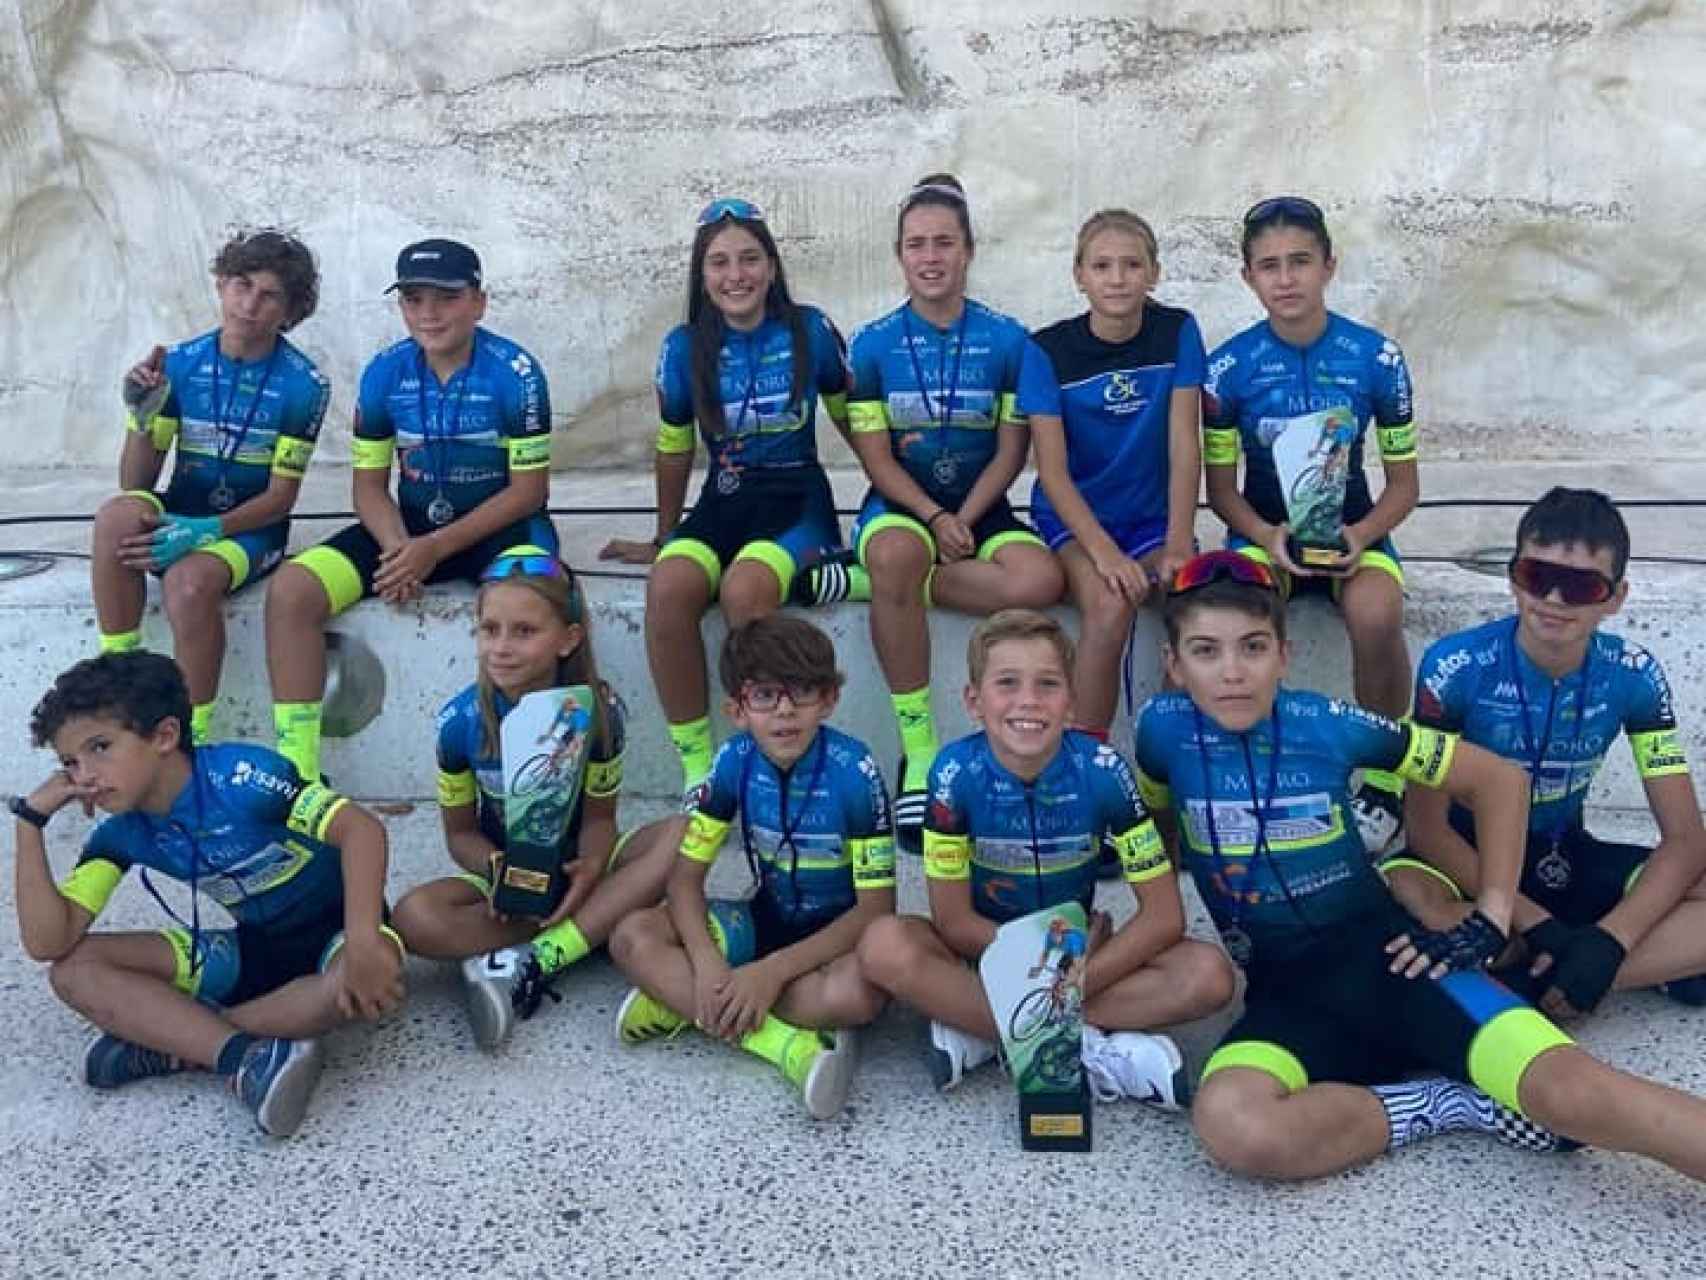 La escuela de ciclismo salmantina se prepara para el campeonato de Castilla y León de pista